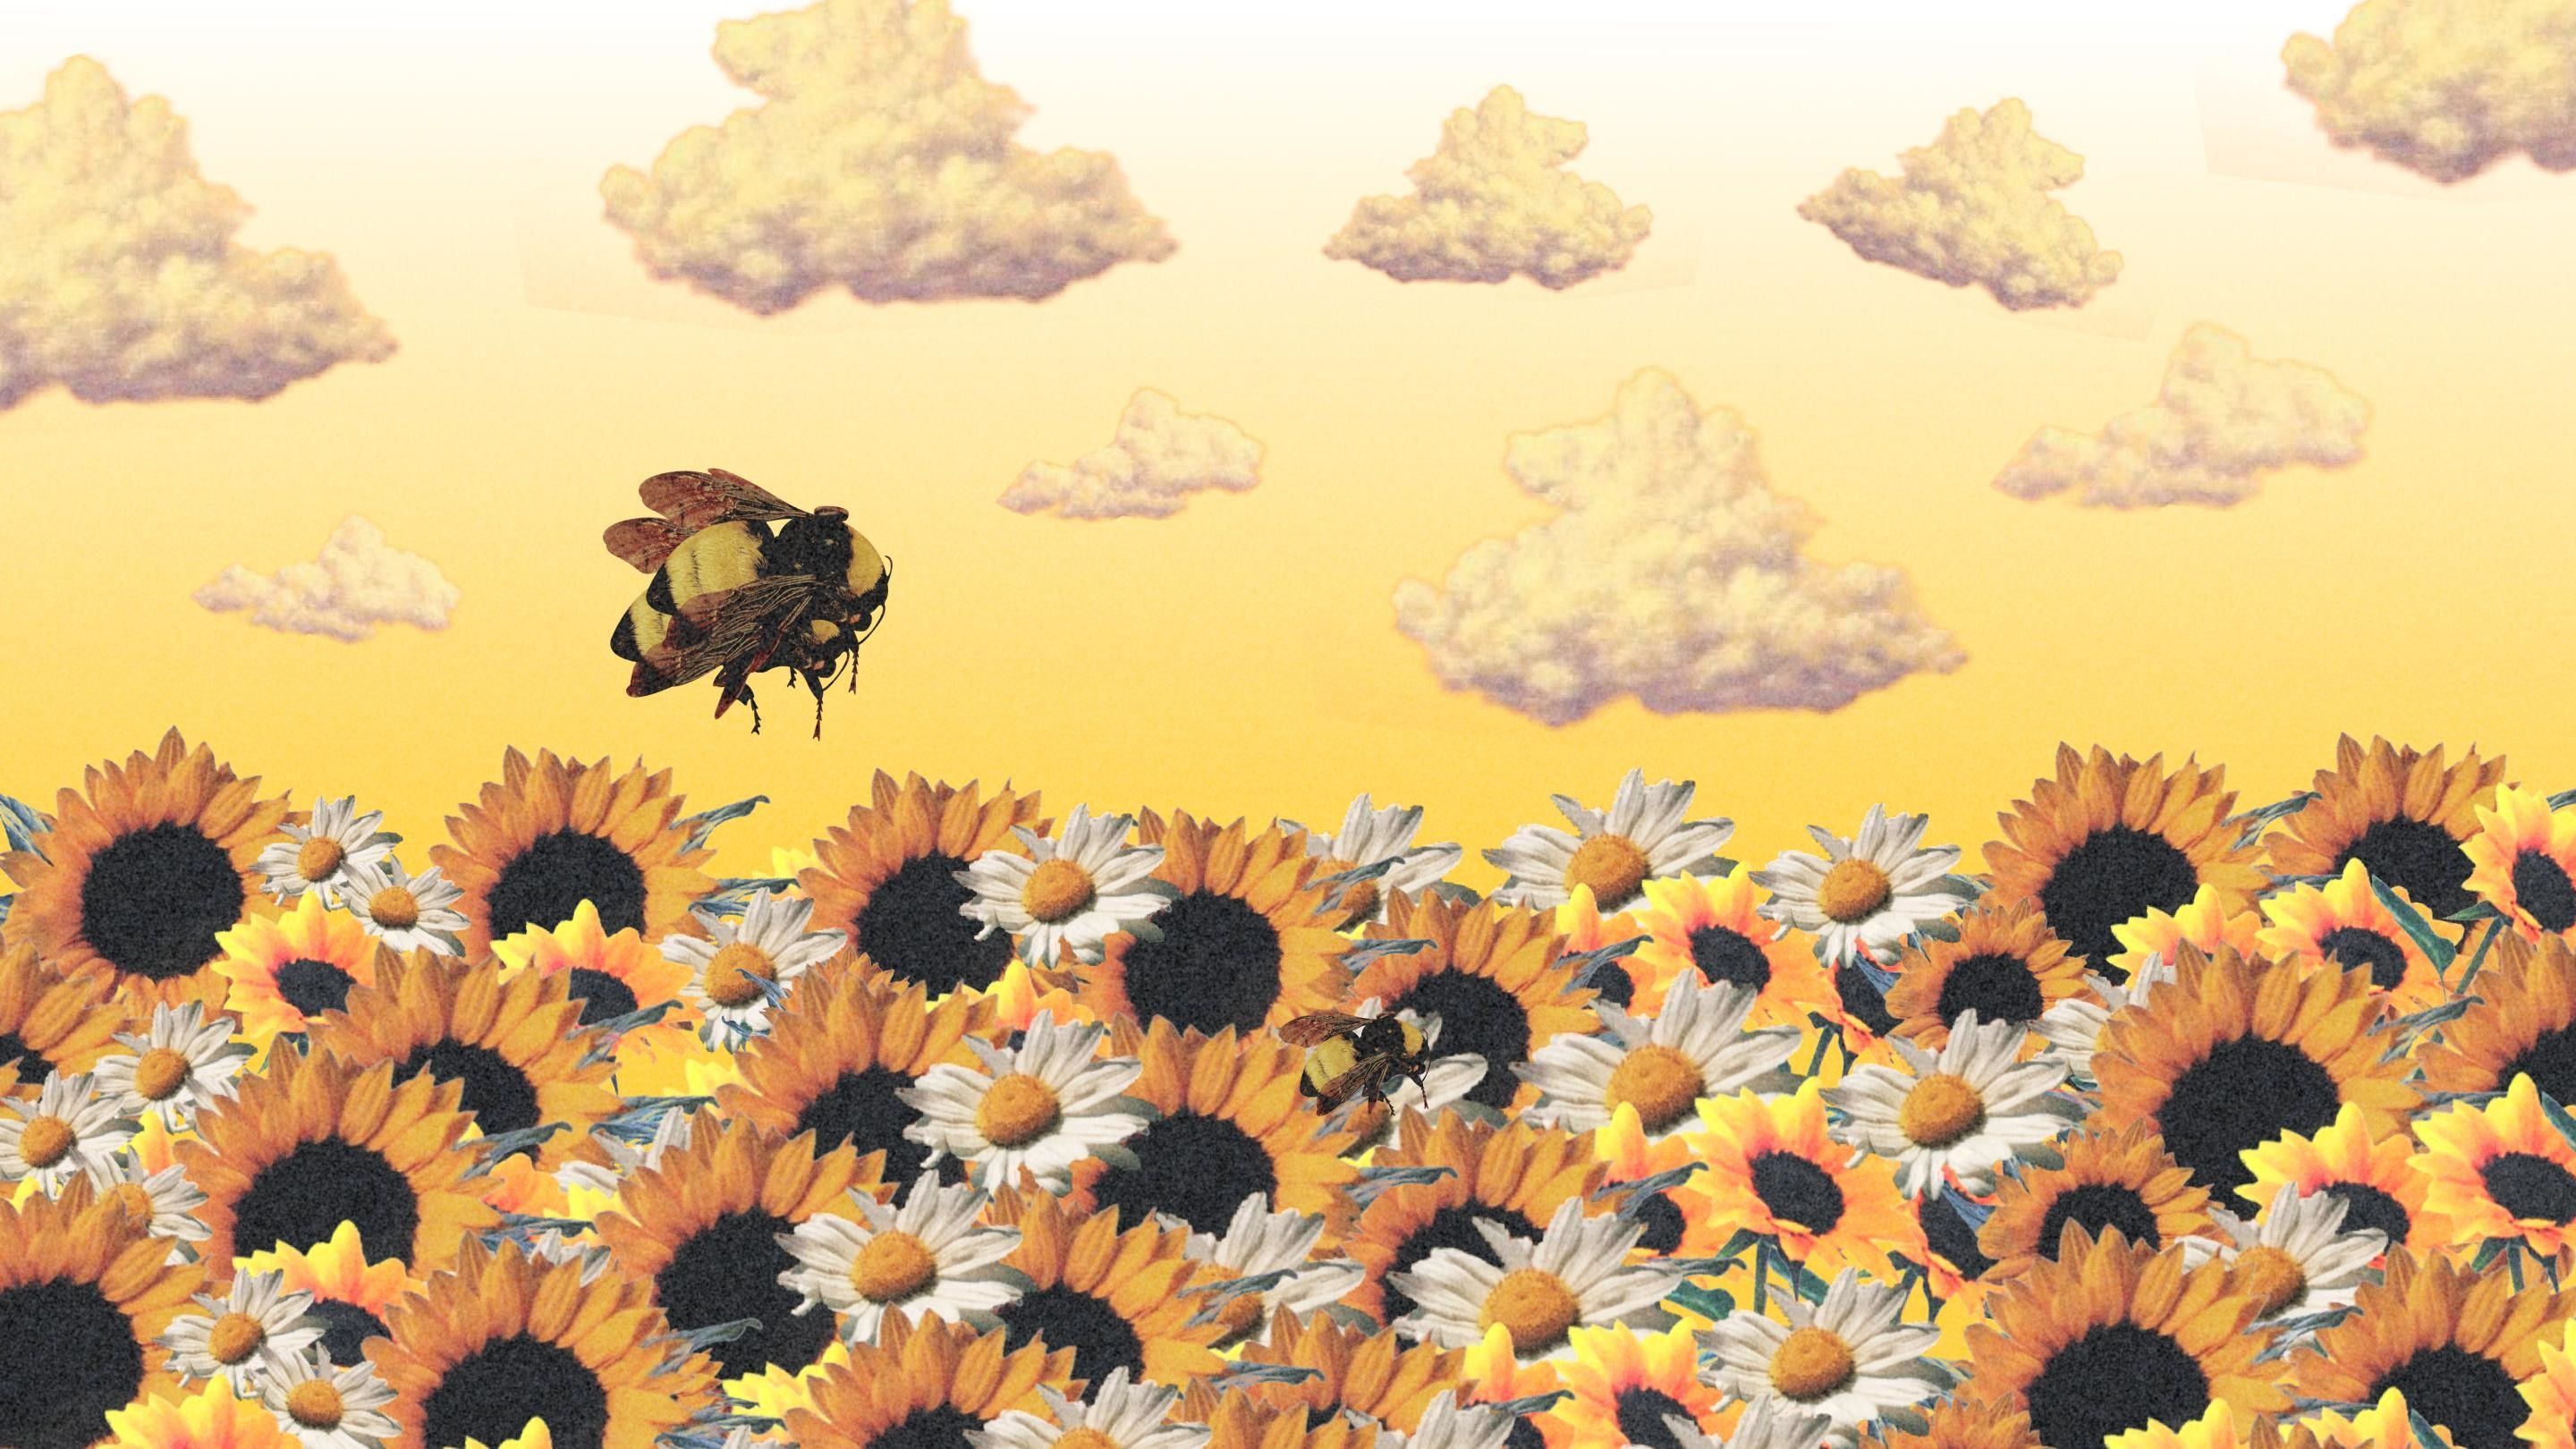 Res: 2880x Yellow bee wallpaper. Aesthetic desktop wallpaper, Desktop wallpaper art, Tyler the creator wallpaper